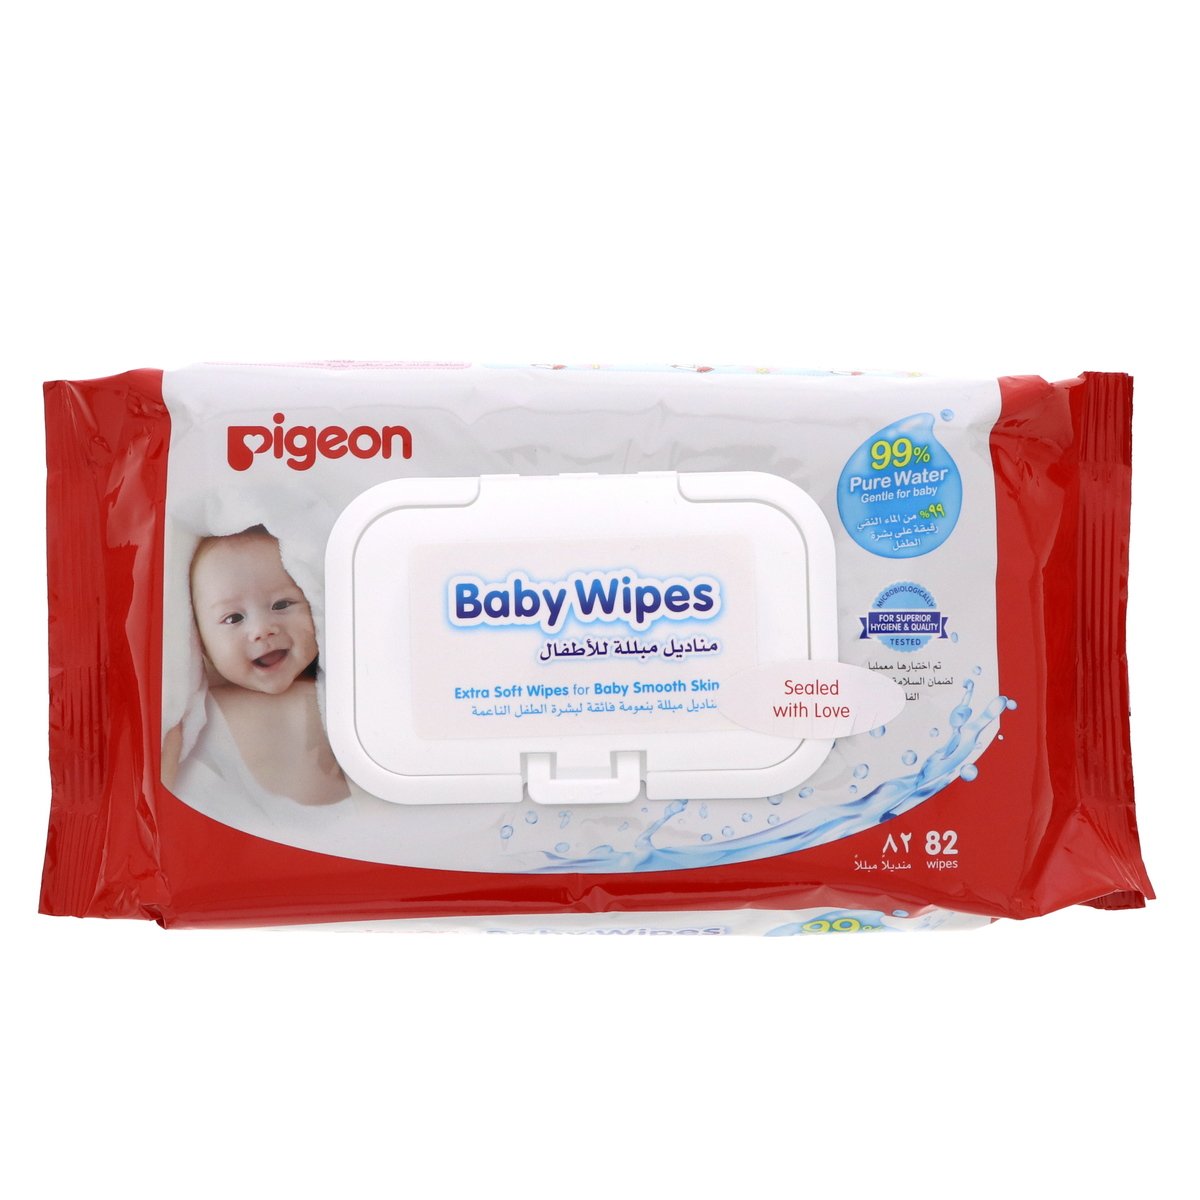 اشتري قم بشراء بيجون مناديل مبللة للاطفال 82 حبة Online at Best Price من الموقع - من لولو هايبر ماركت Baby Wipes في السعودية